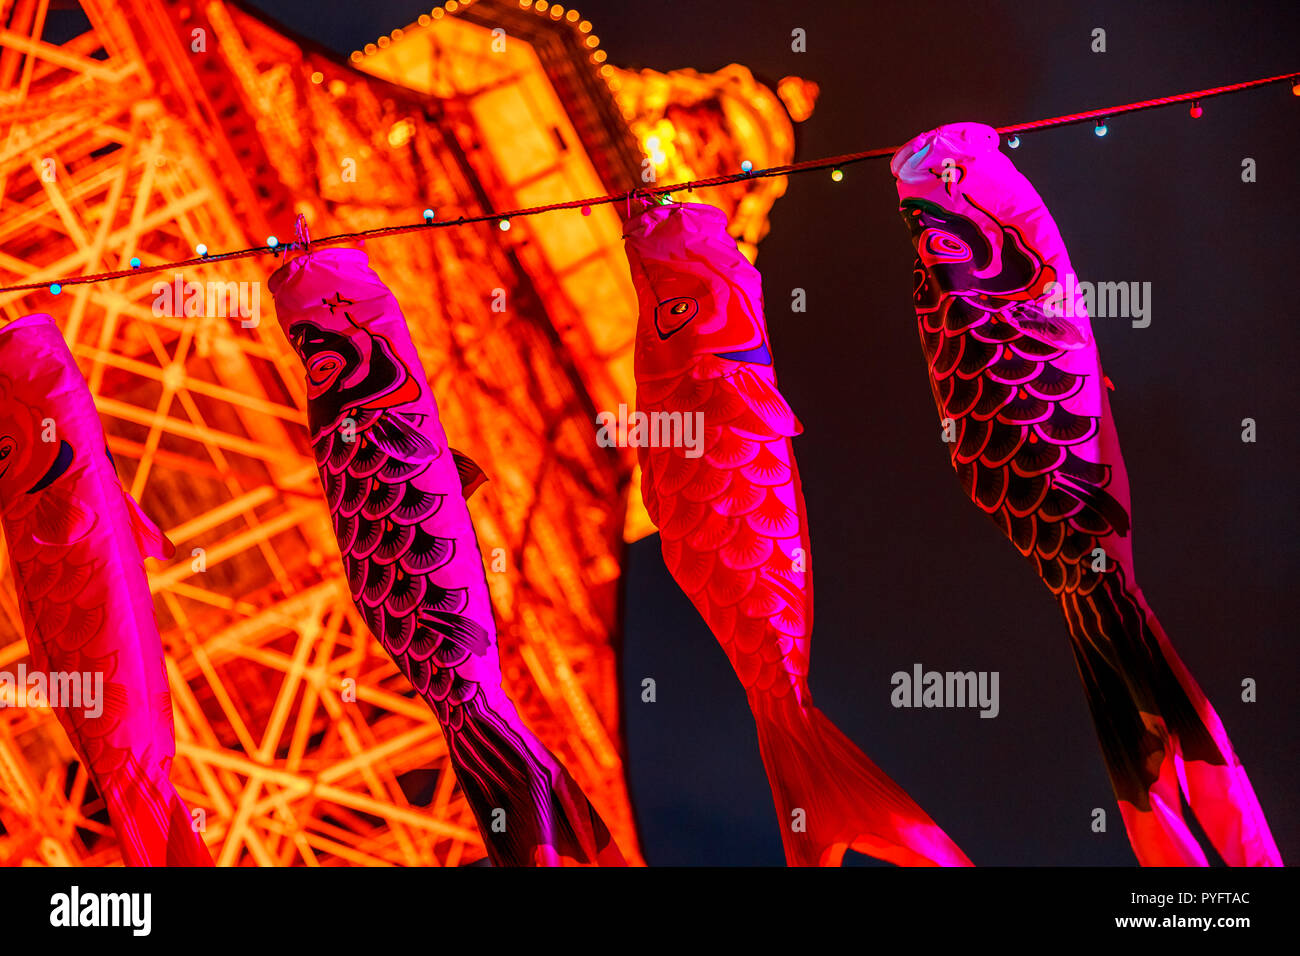 Tokyo, Japan - 23. April 2017: Koinobori ein rosa Karpfen-förmige wind Socken, traditionell in Japan geflogen Kindertag feiern. Verschwommen Tokyo Tower bei Nacht auf den Hintergrund. Horizontale erschossen. Stockfoto